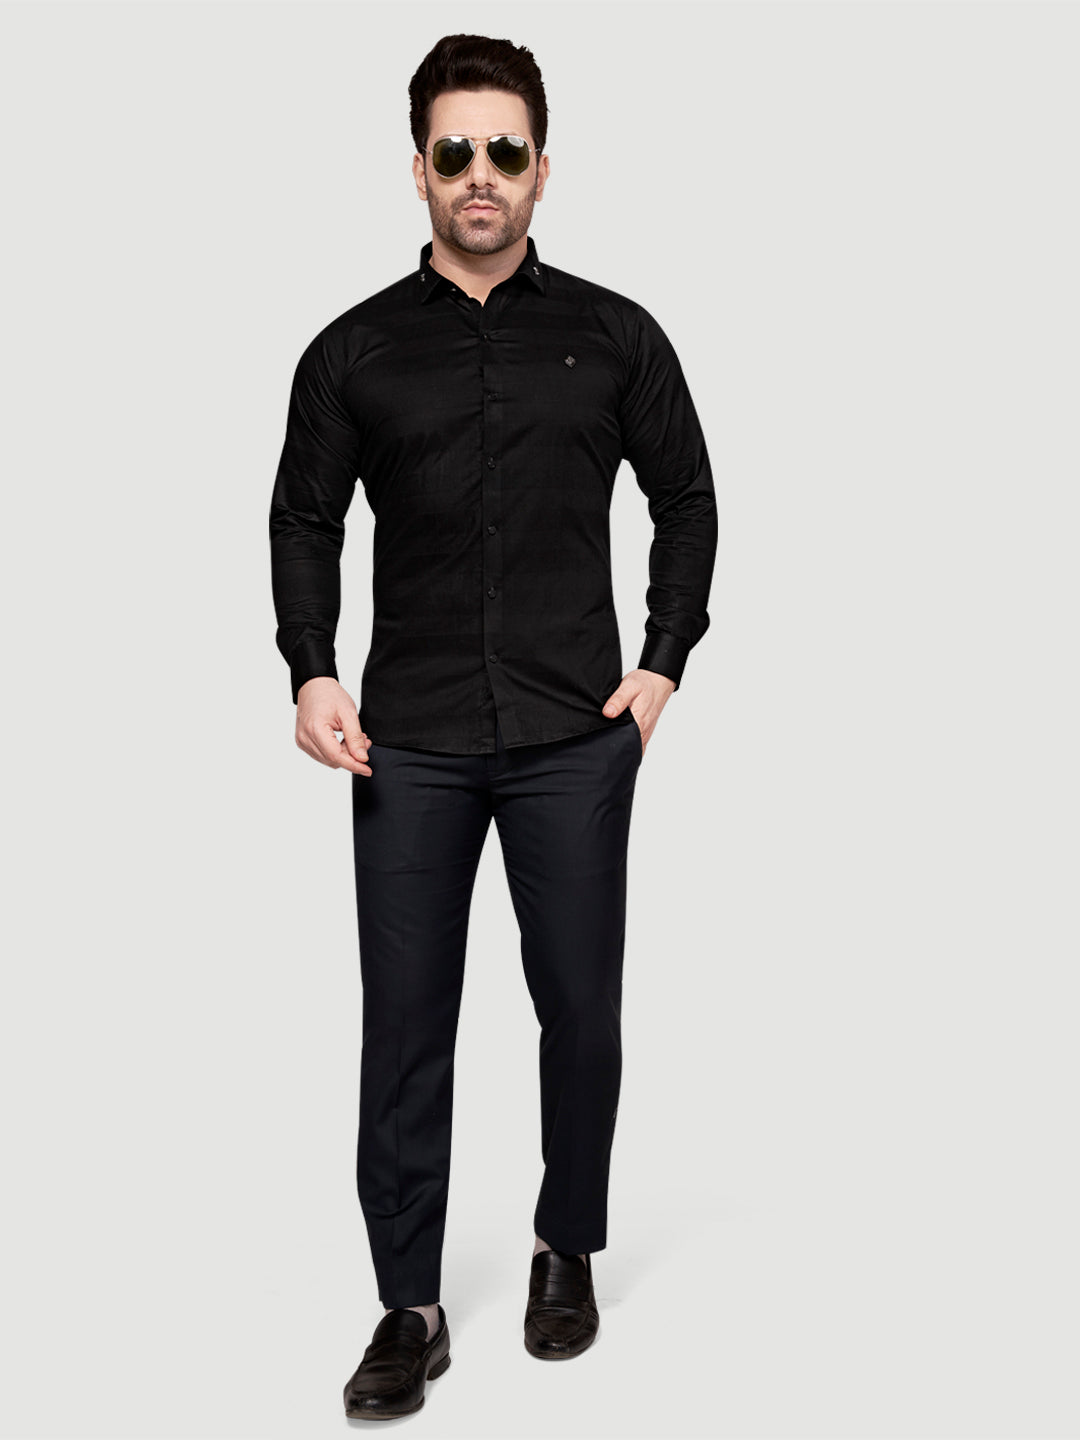 Black and White Men's Weft Designer Shirt Black